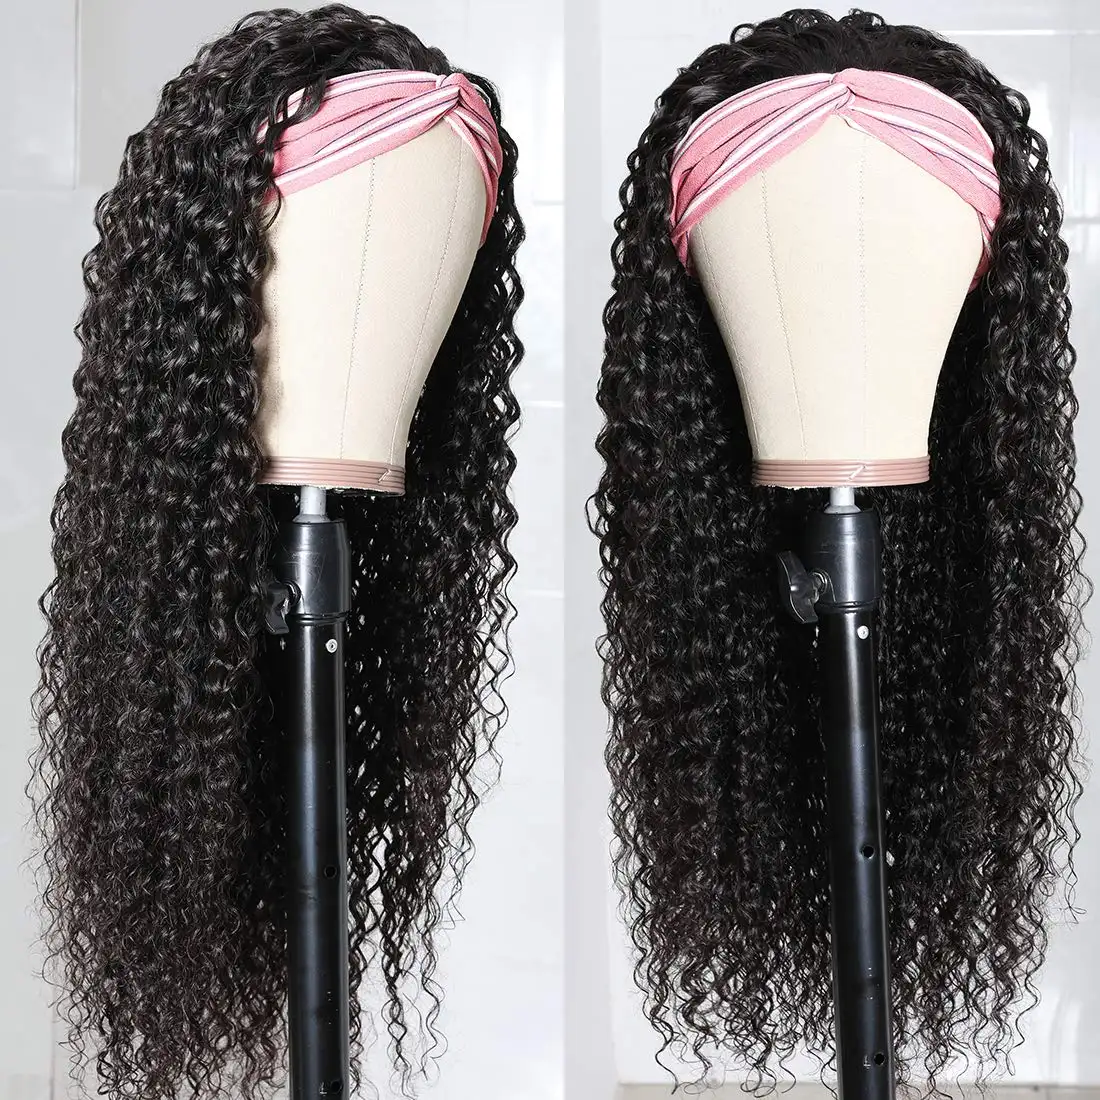 African American Women Headband Wig Short Headband Malaysian Curly Wigs Human Hair Kinky Curly Headband Wig 12 Inch